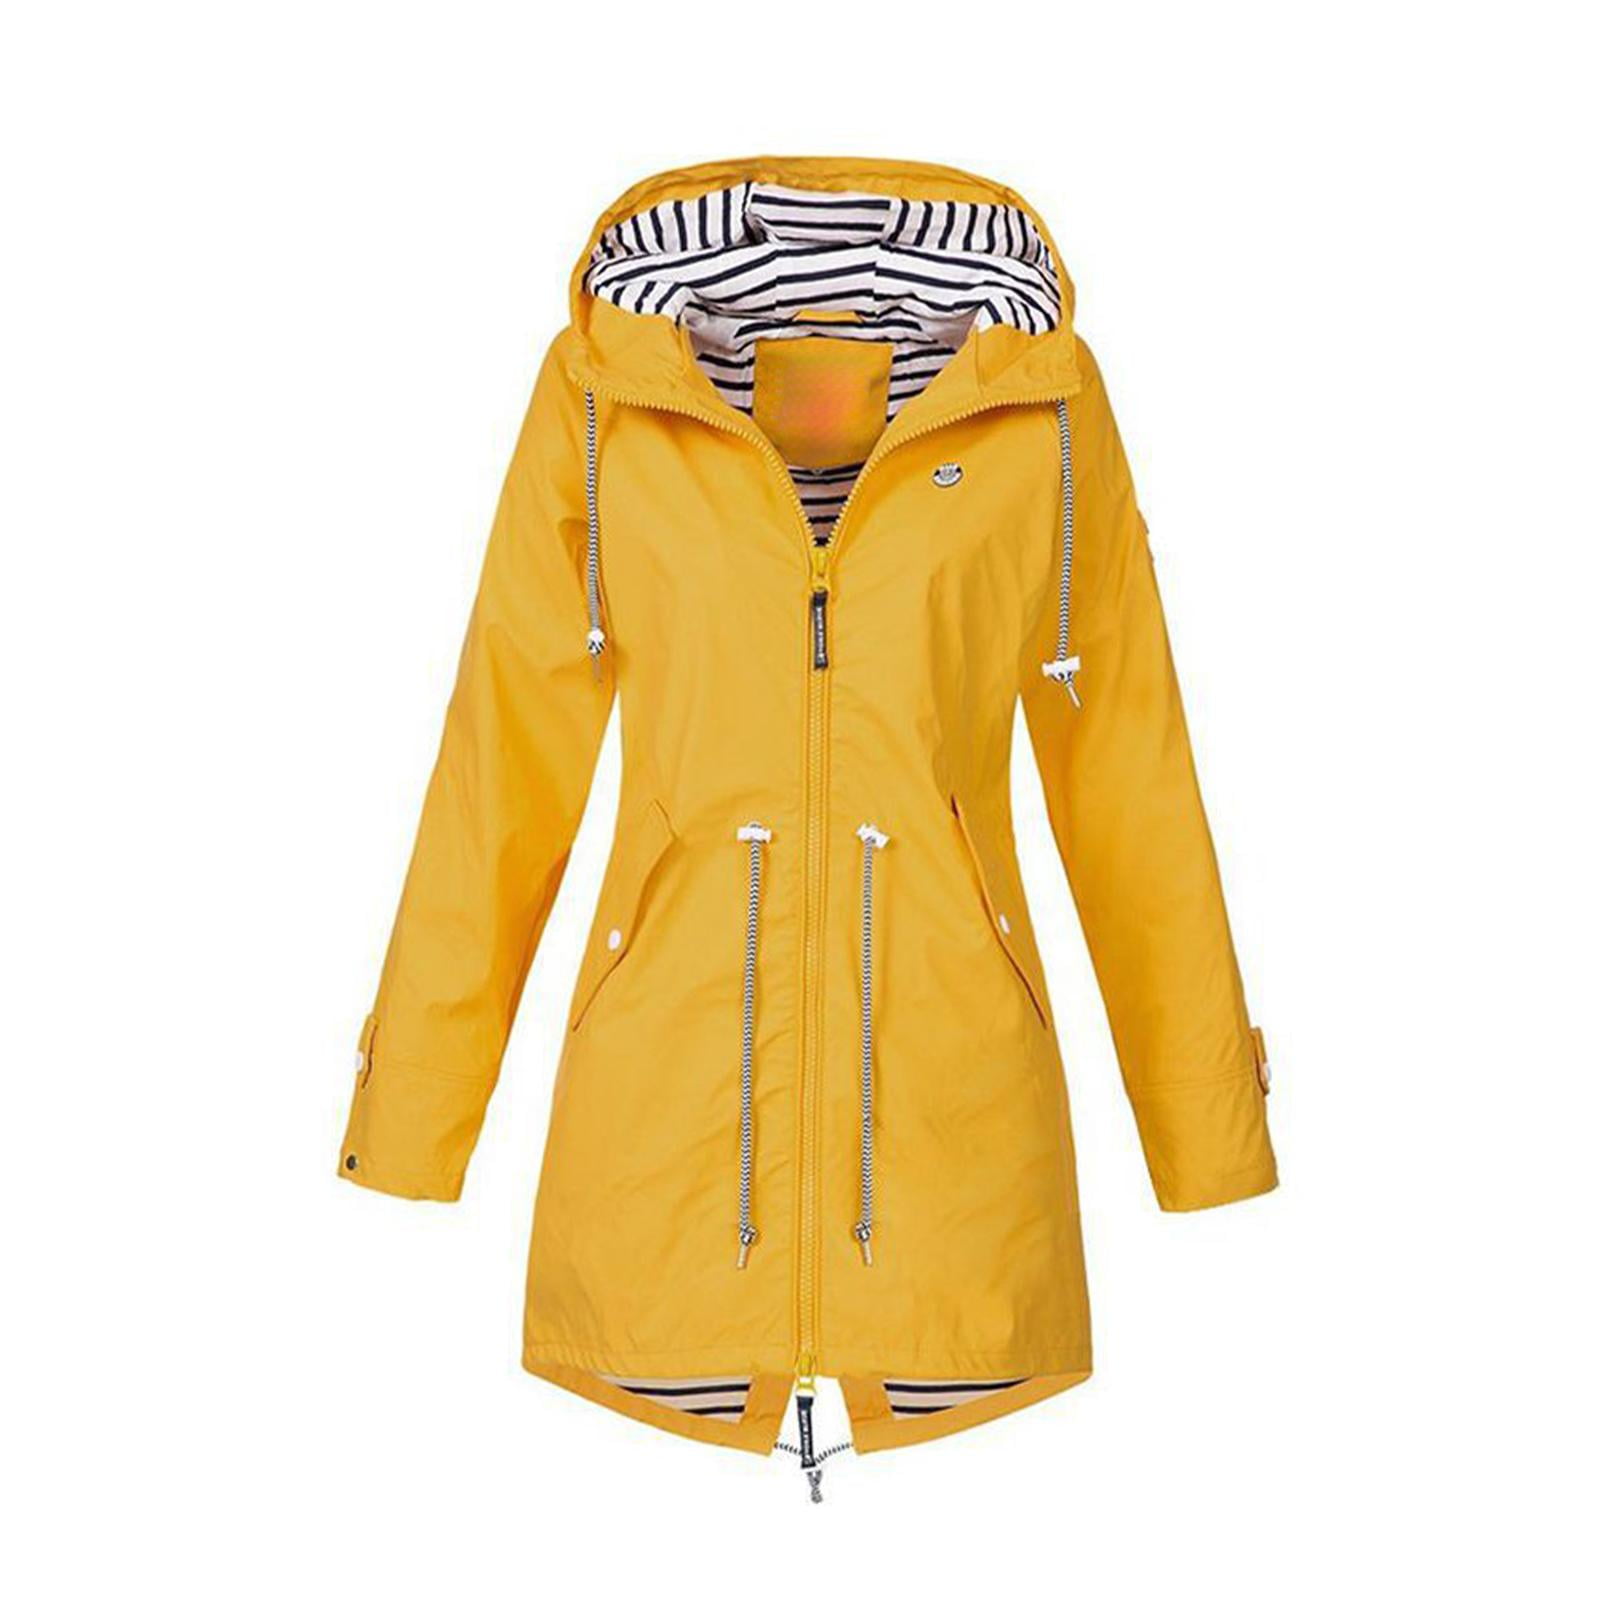 Raincoat Women Lightweight Waterproof Rain Jackets Packable Outdoor ...